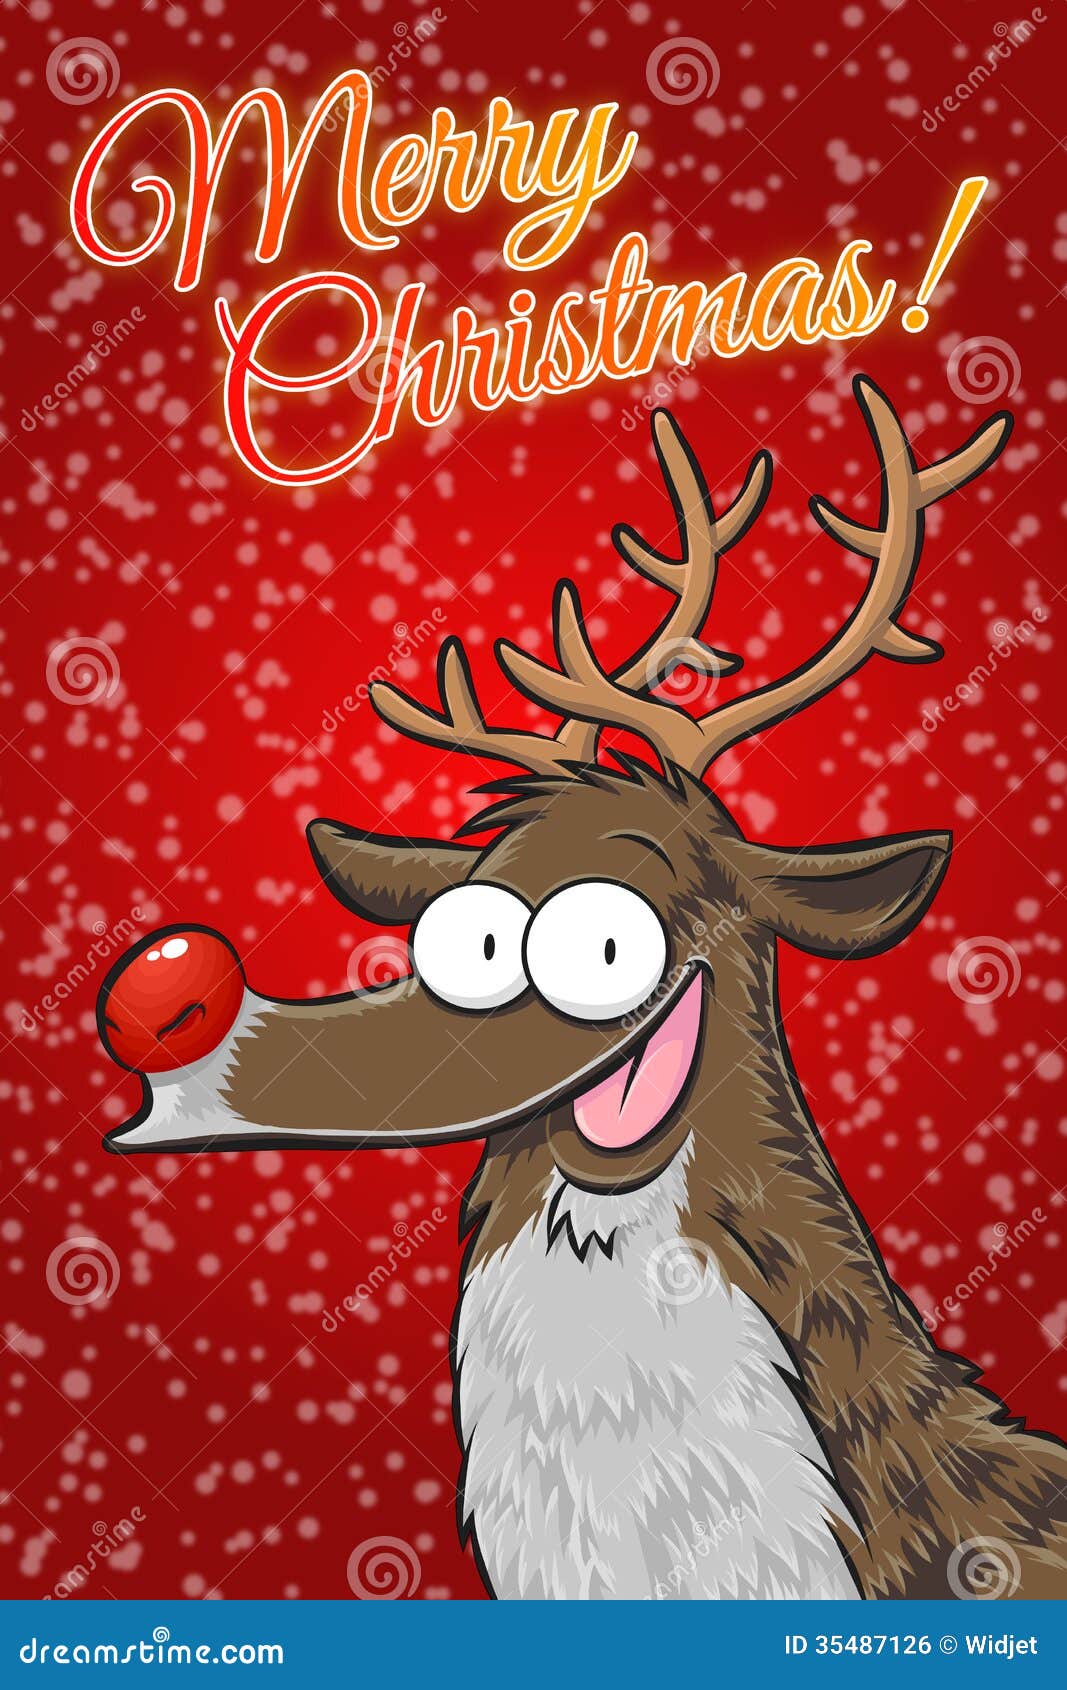 Buon Natale Inglese.Rudolph Buon Natale Inglese Illustrazione Di Stock Illustrazione Di Cartolina Cervi 35487126